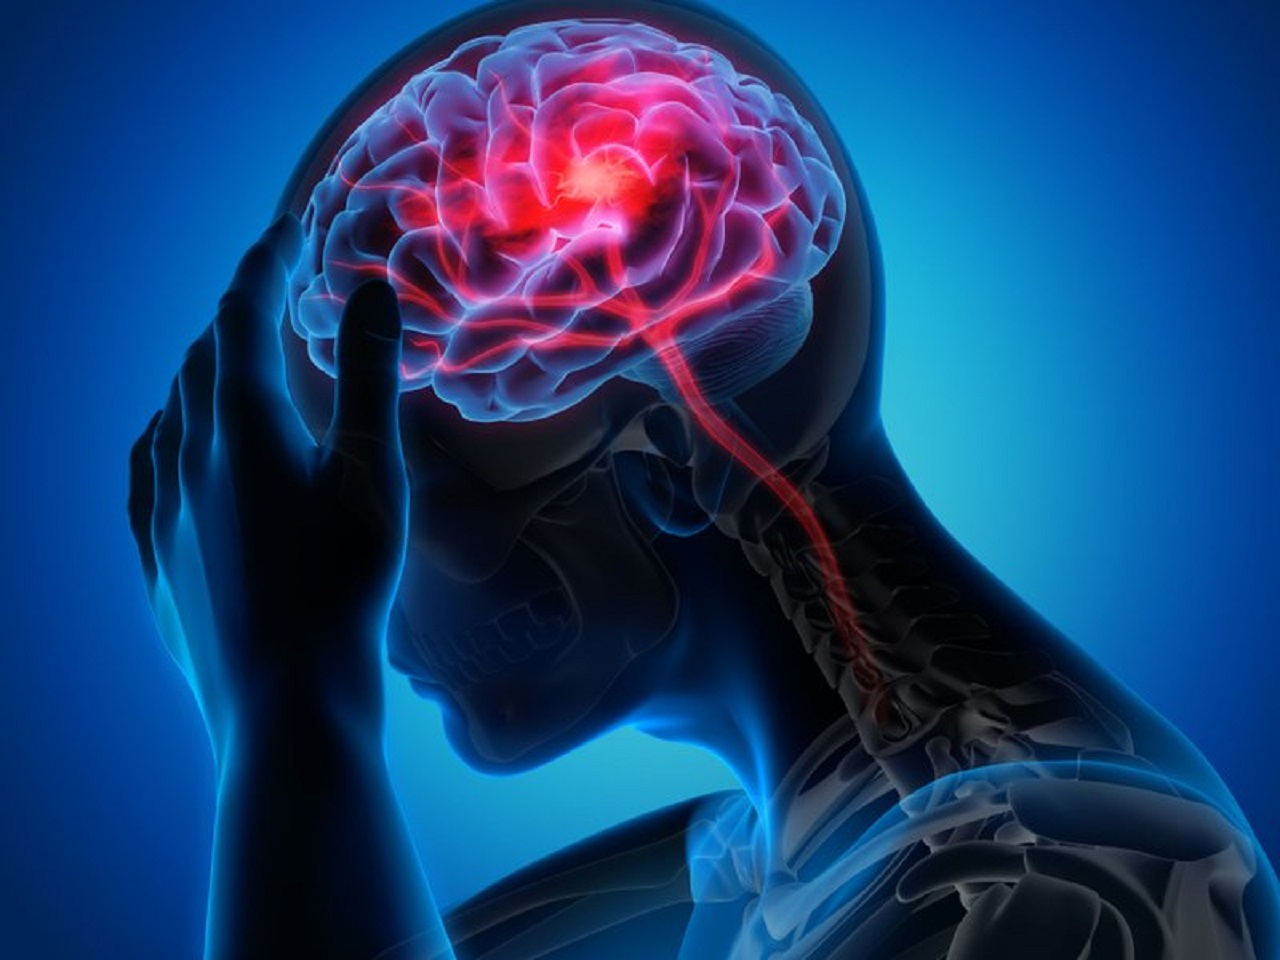 Khó ngủ đau đầu kéo dài tăng nguy cơ đột quỵ